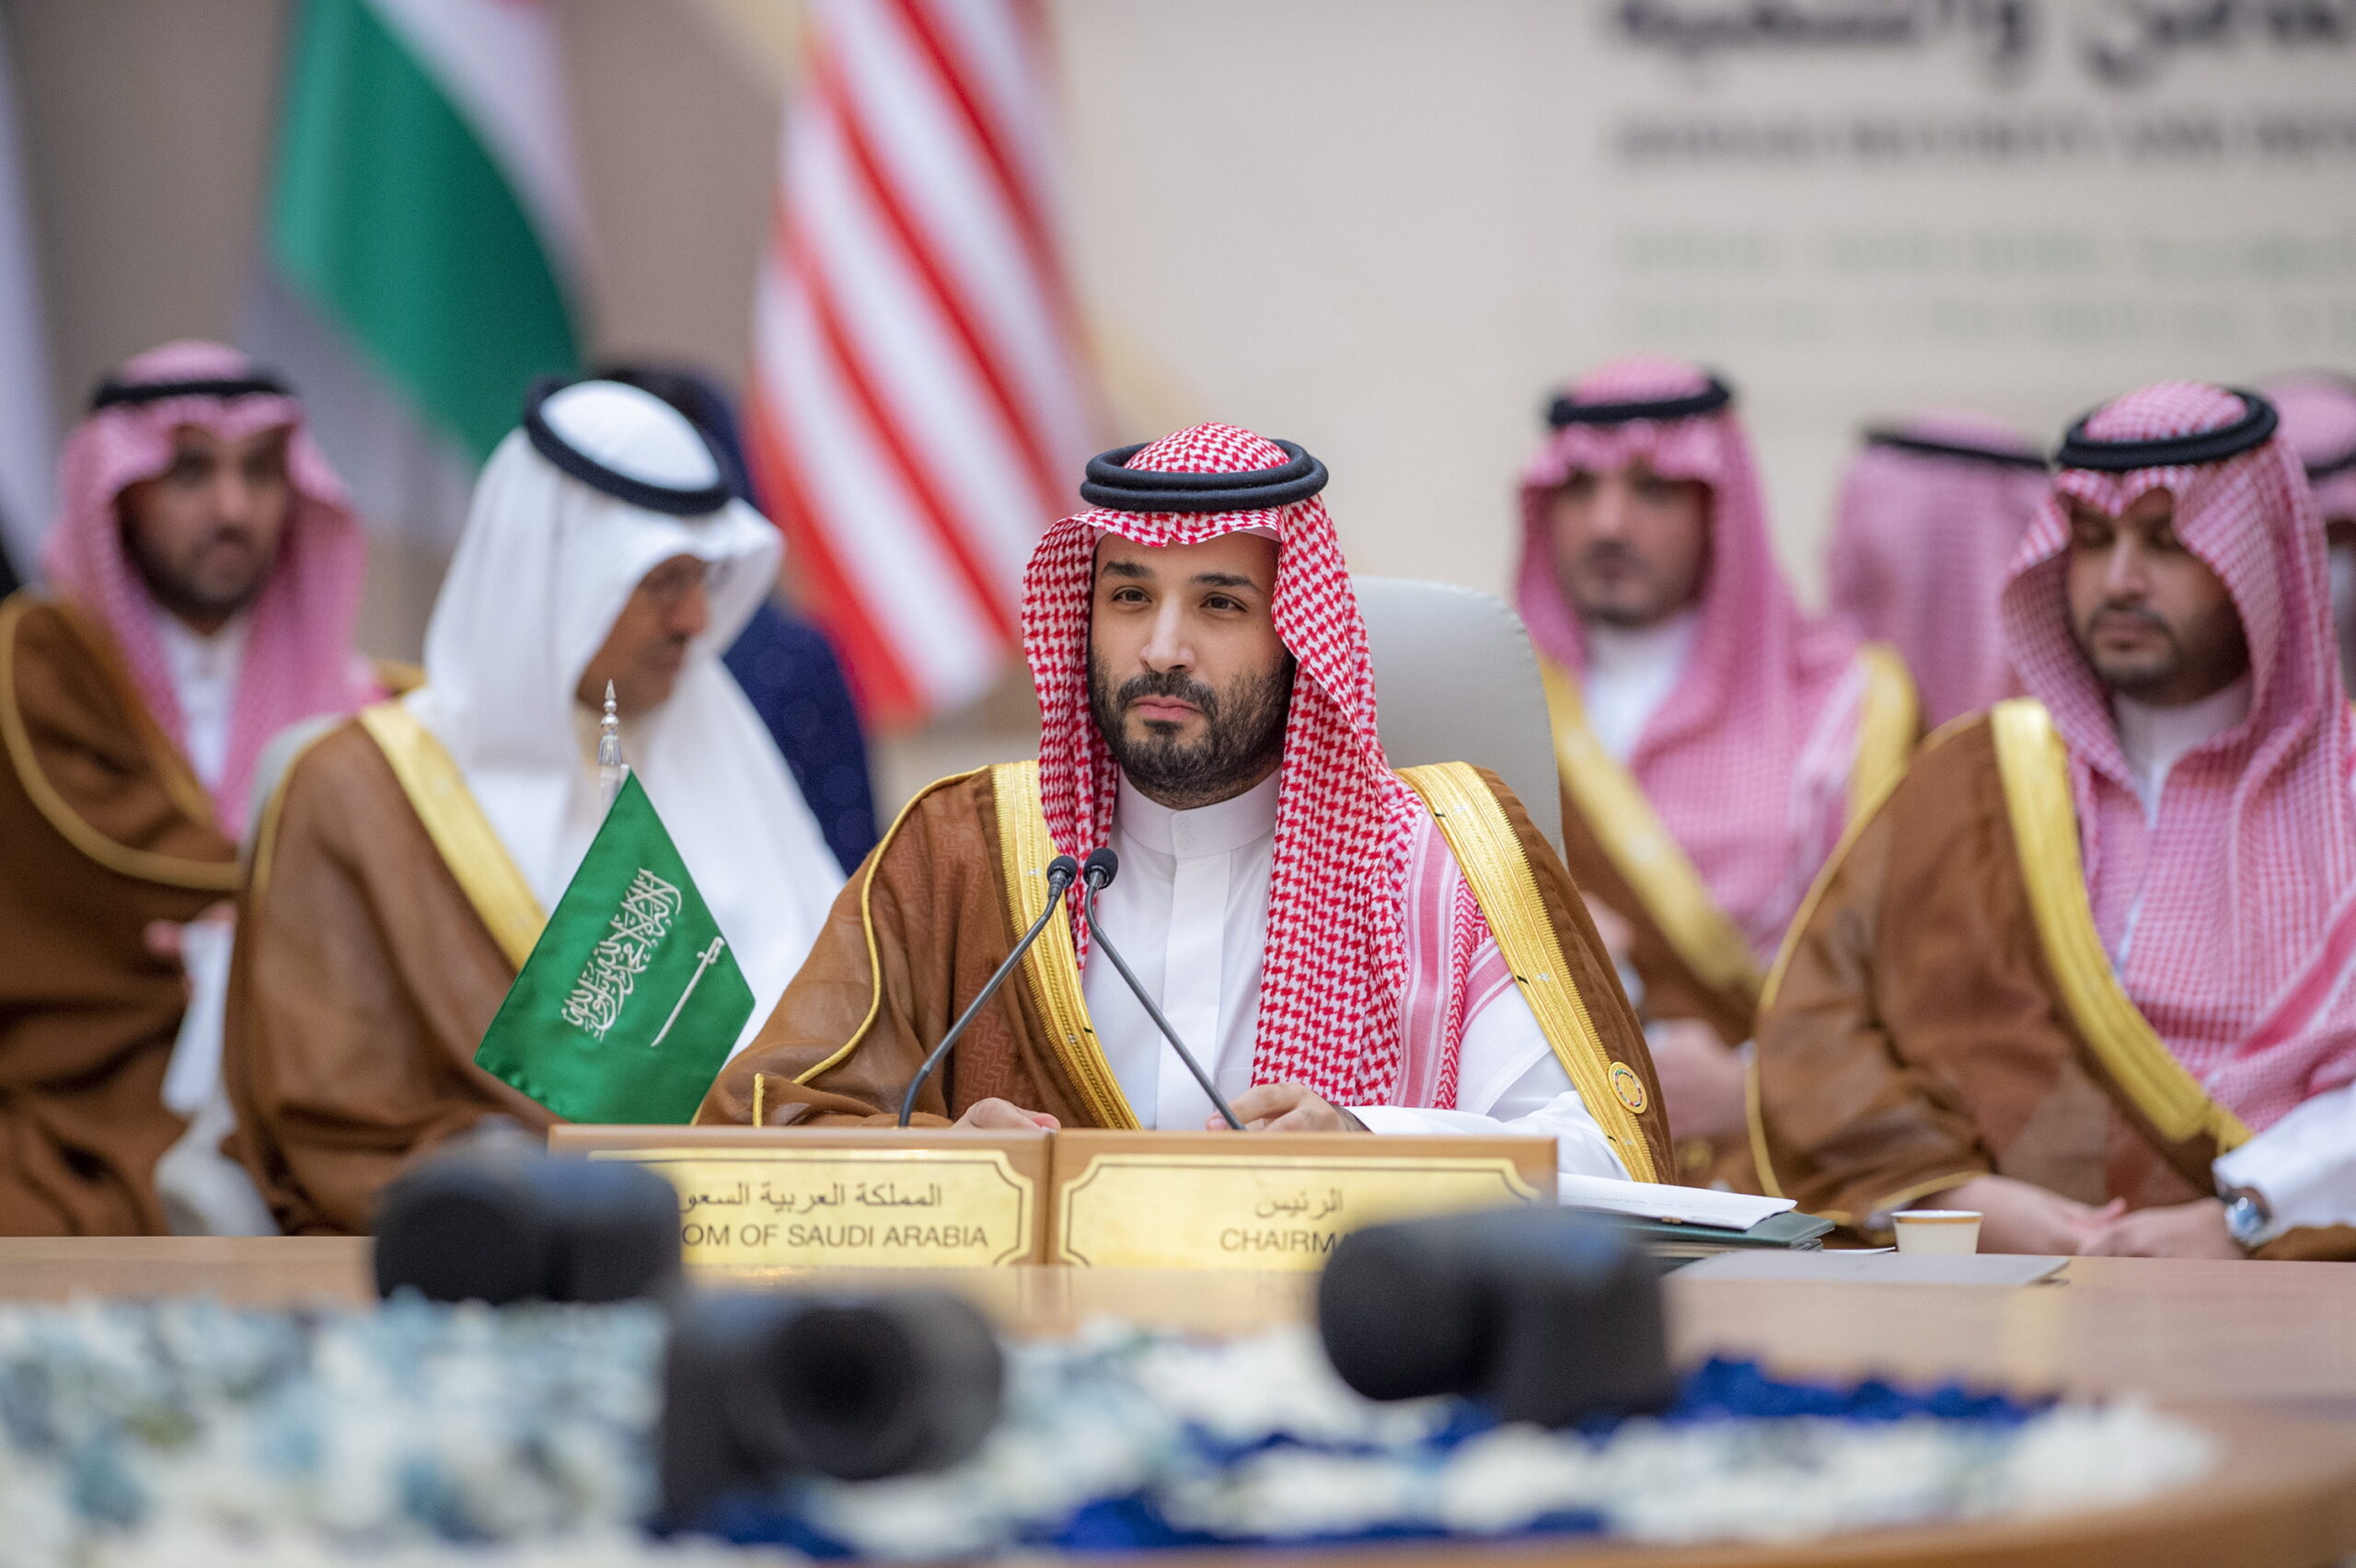 A szaúd-arábiai vallásszabadságot vizsgálta a rabbi, levetették a kipáját – Neokohn